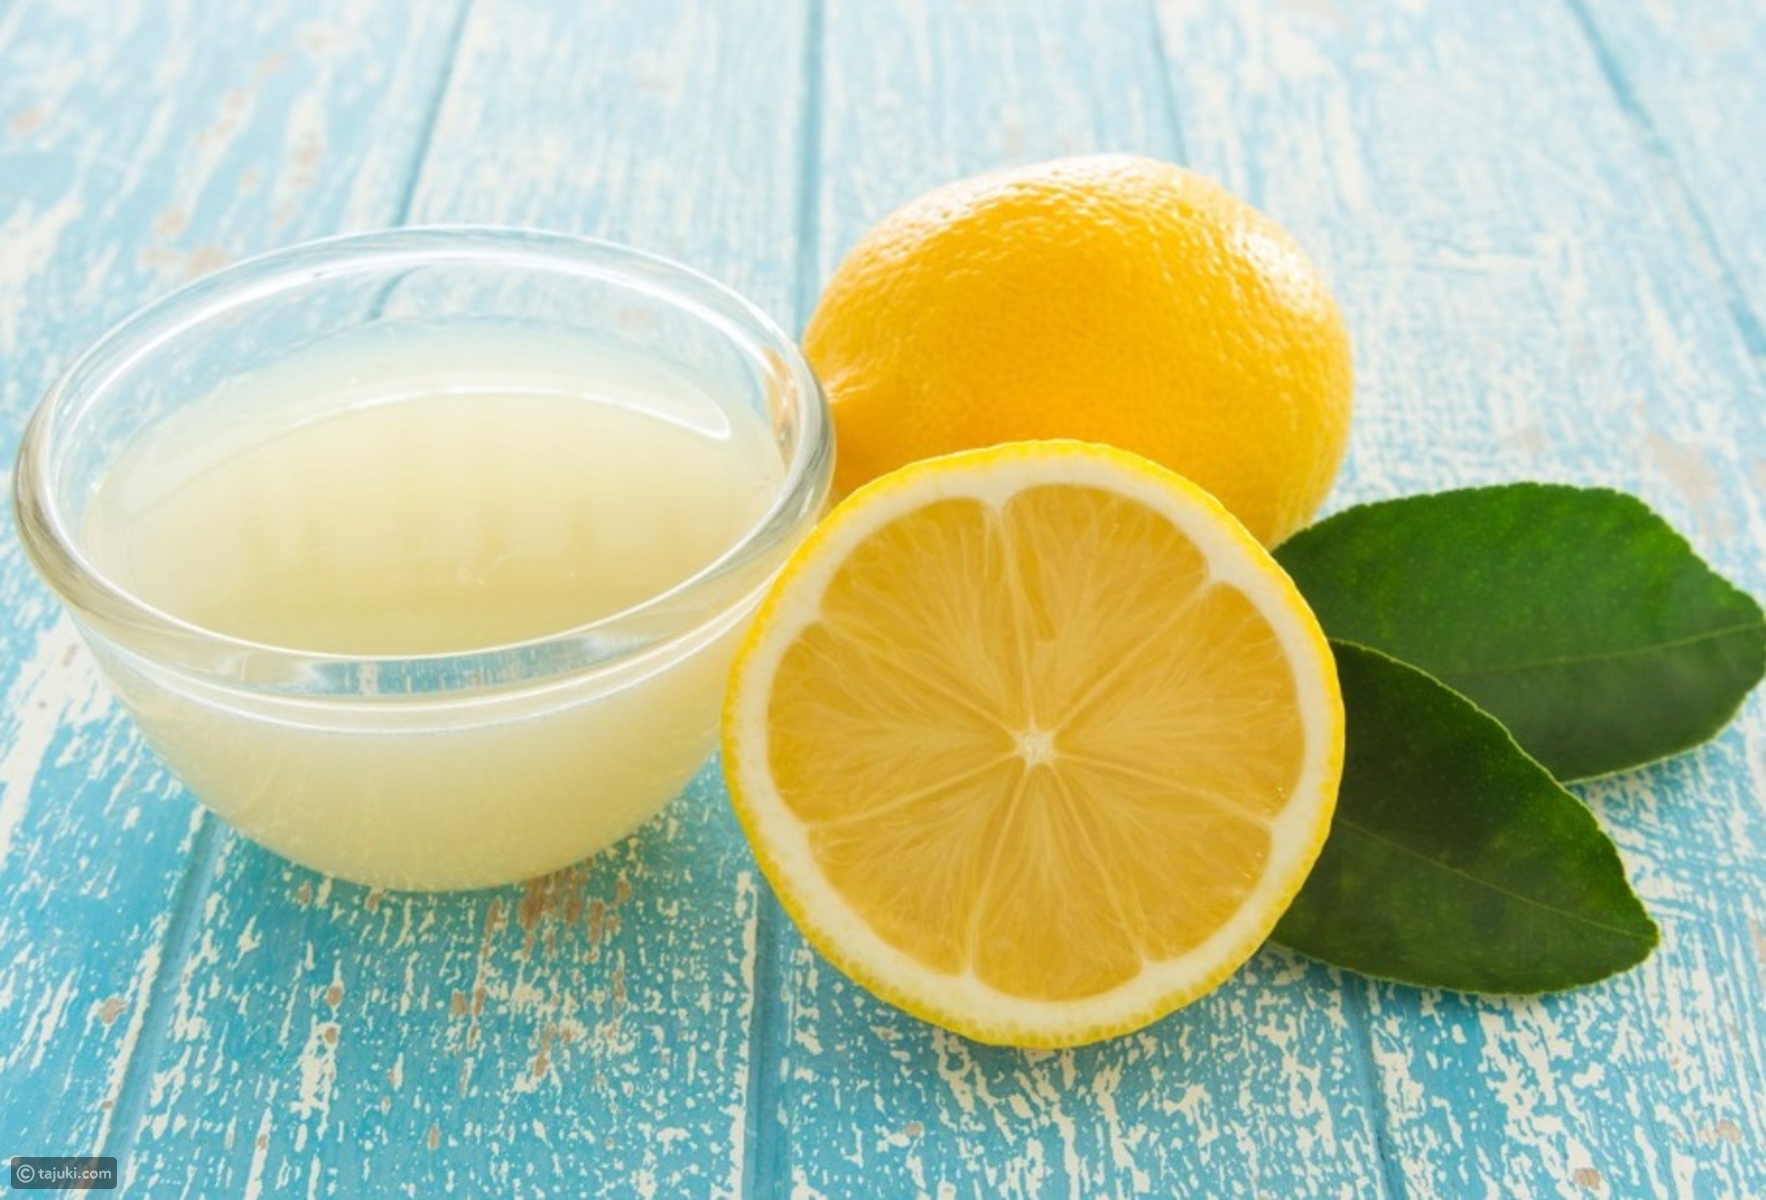 Сок лимона 1 2. Лимонный сок. Лимон. Свежевыжатый лимонный сок. Лимон и лимонный сок.